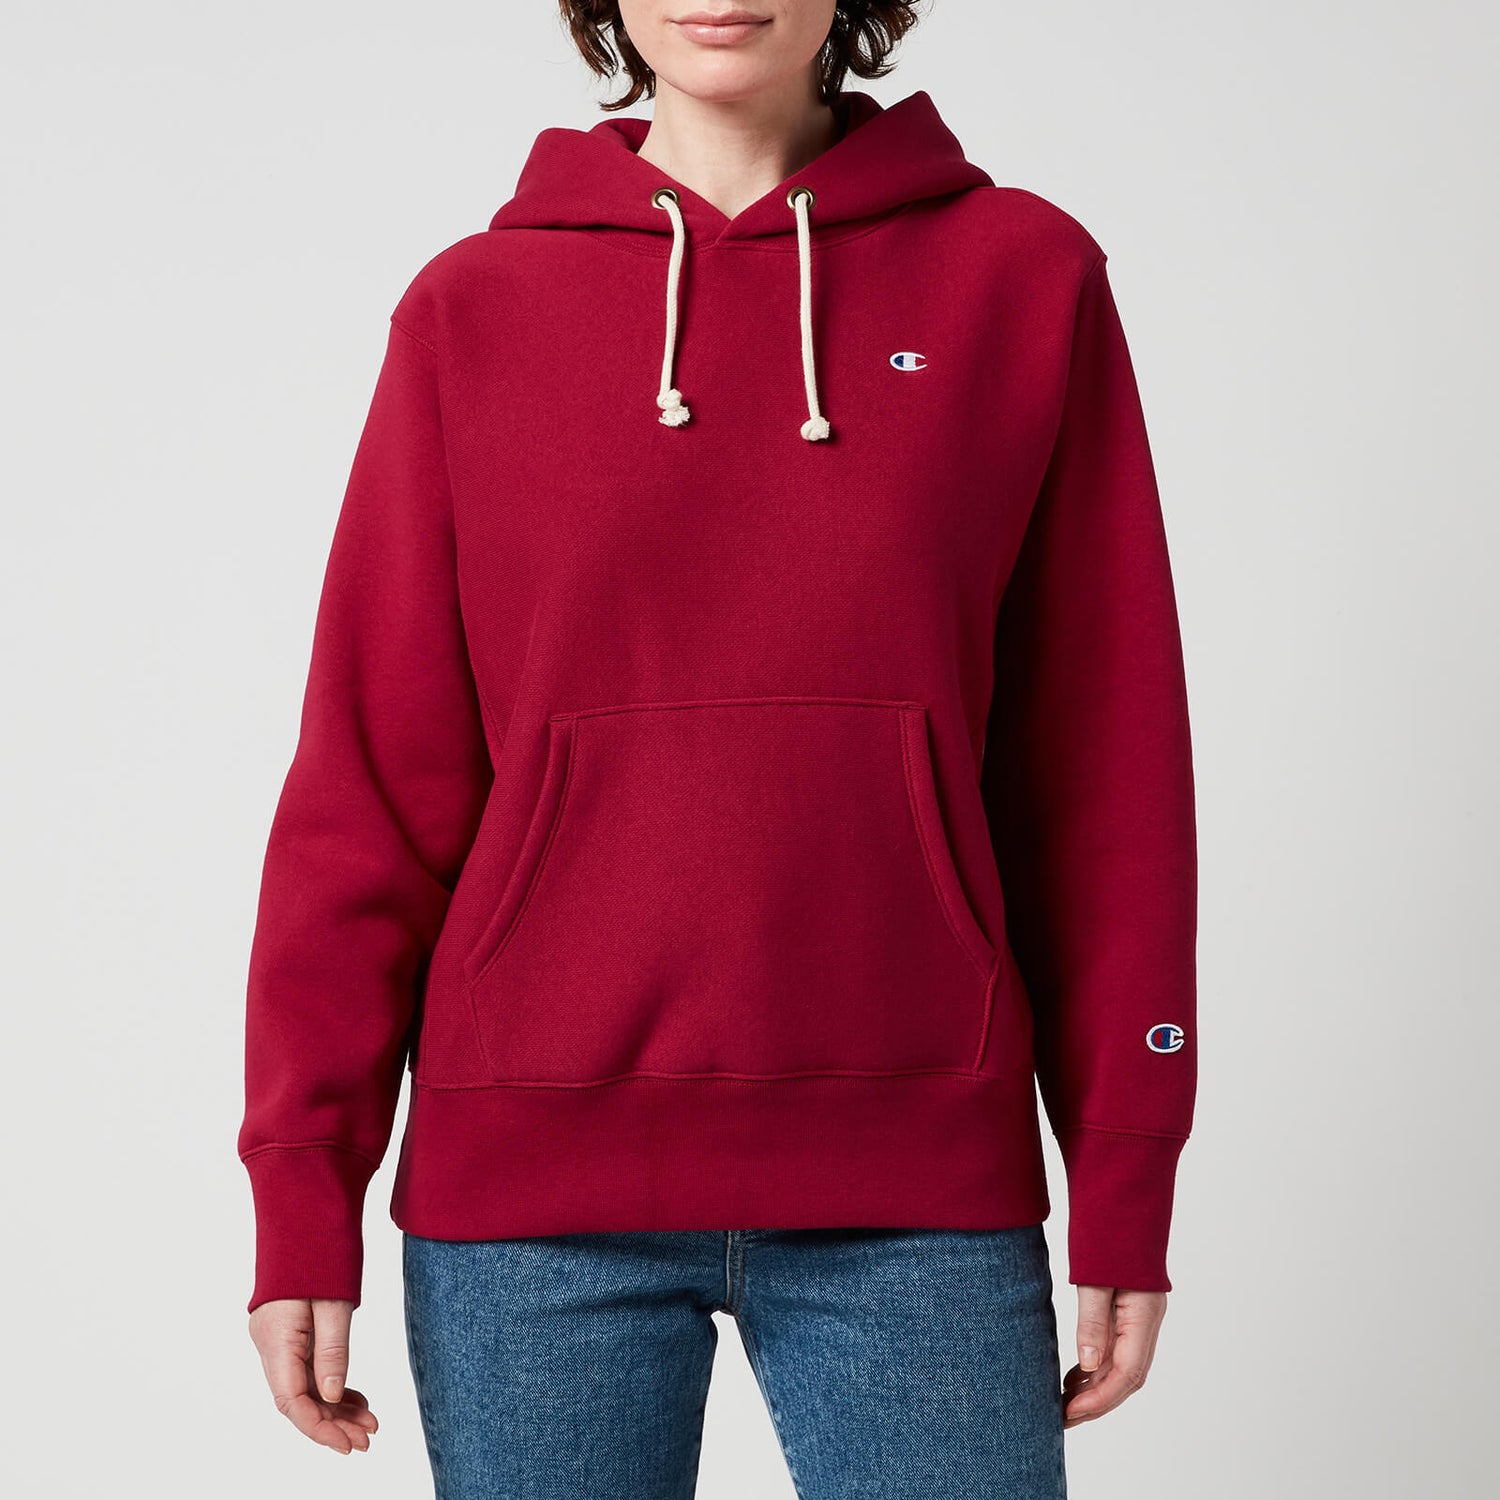 Champion Women's Hooded Sweatshirt - Burgundy - XS